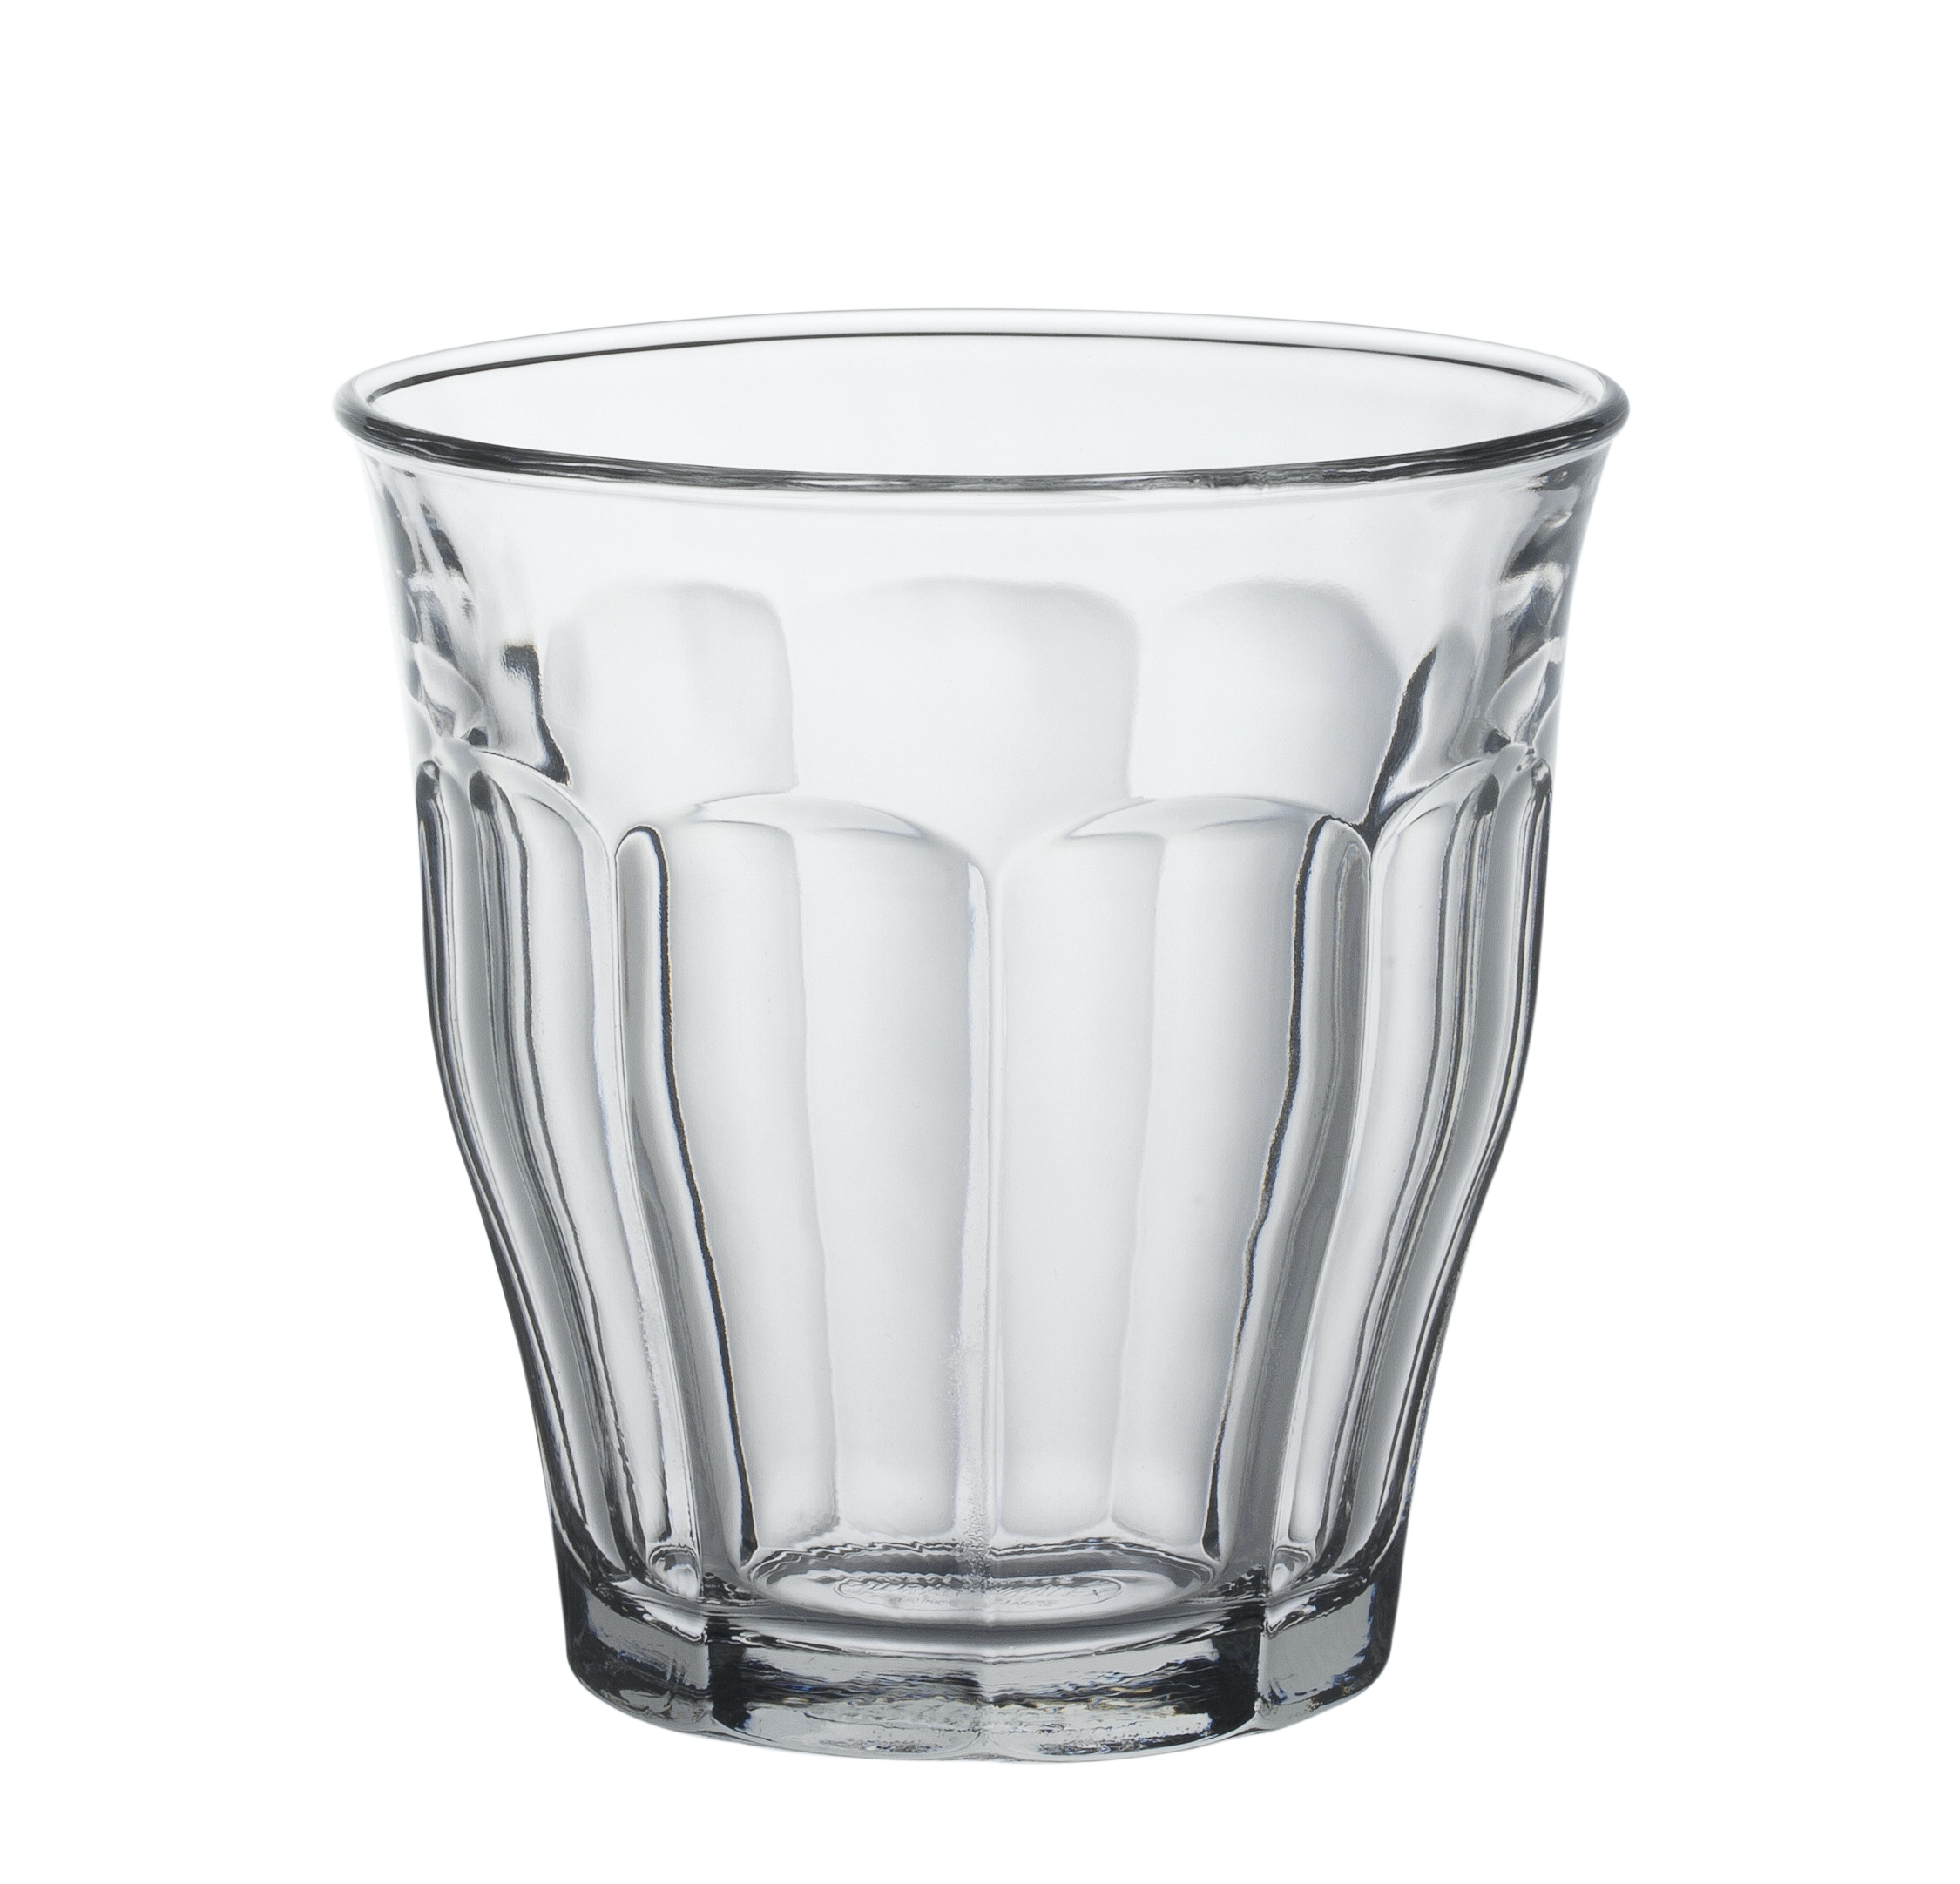 Duralex Picardie Tumbler, Trinkglas, 310ml, Glas gehärtet, transparent, 6 Stück